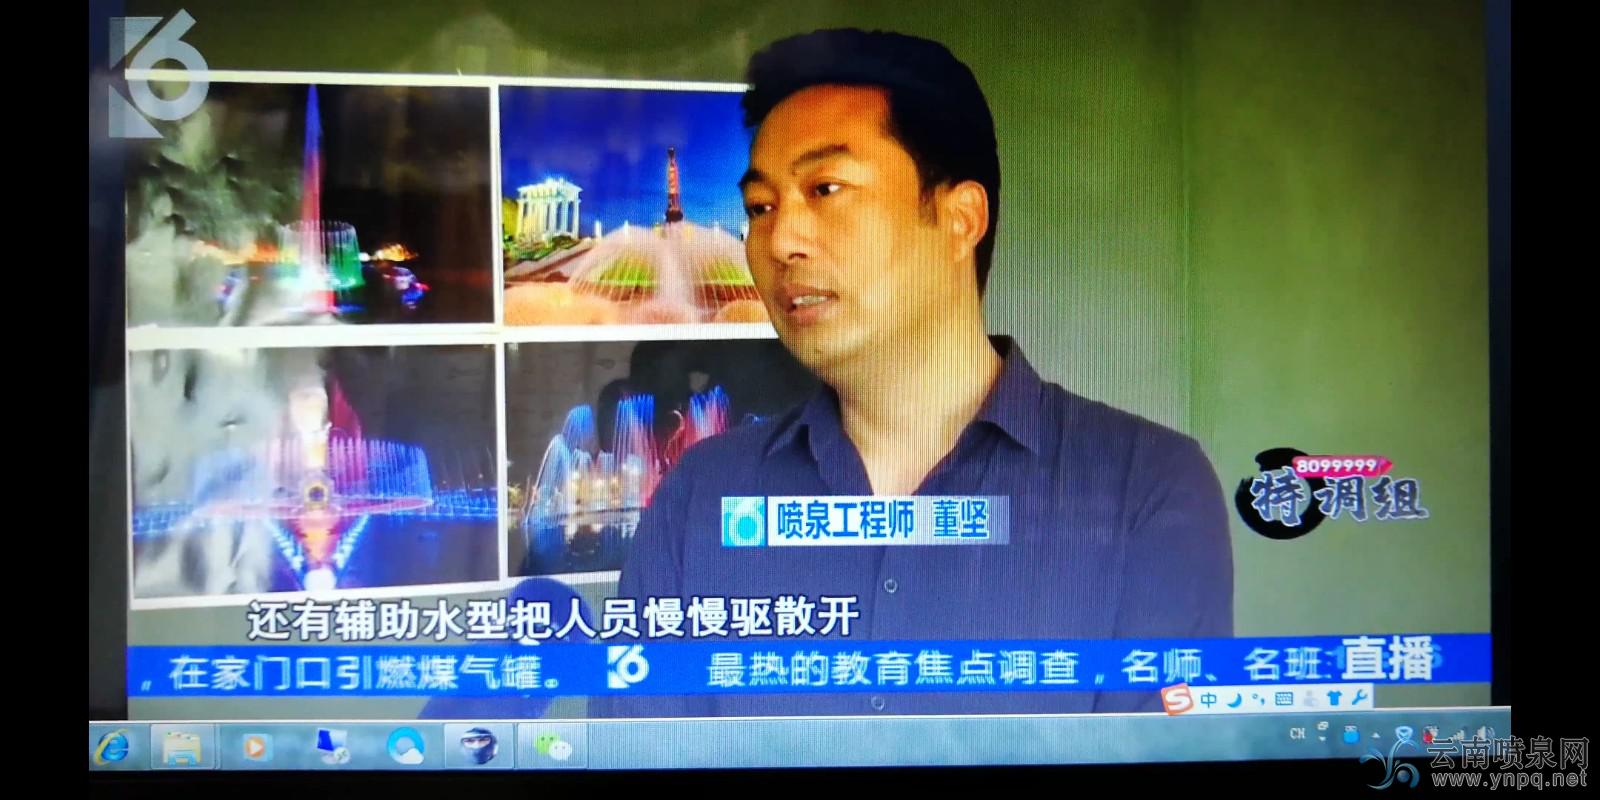 昆明电视台采访了华兴喷泉公司总经理董坚先生